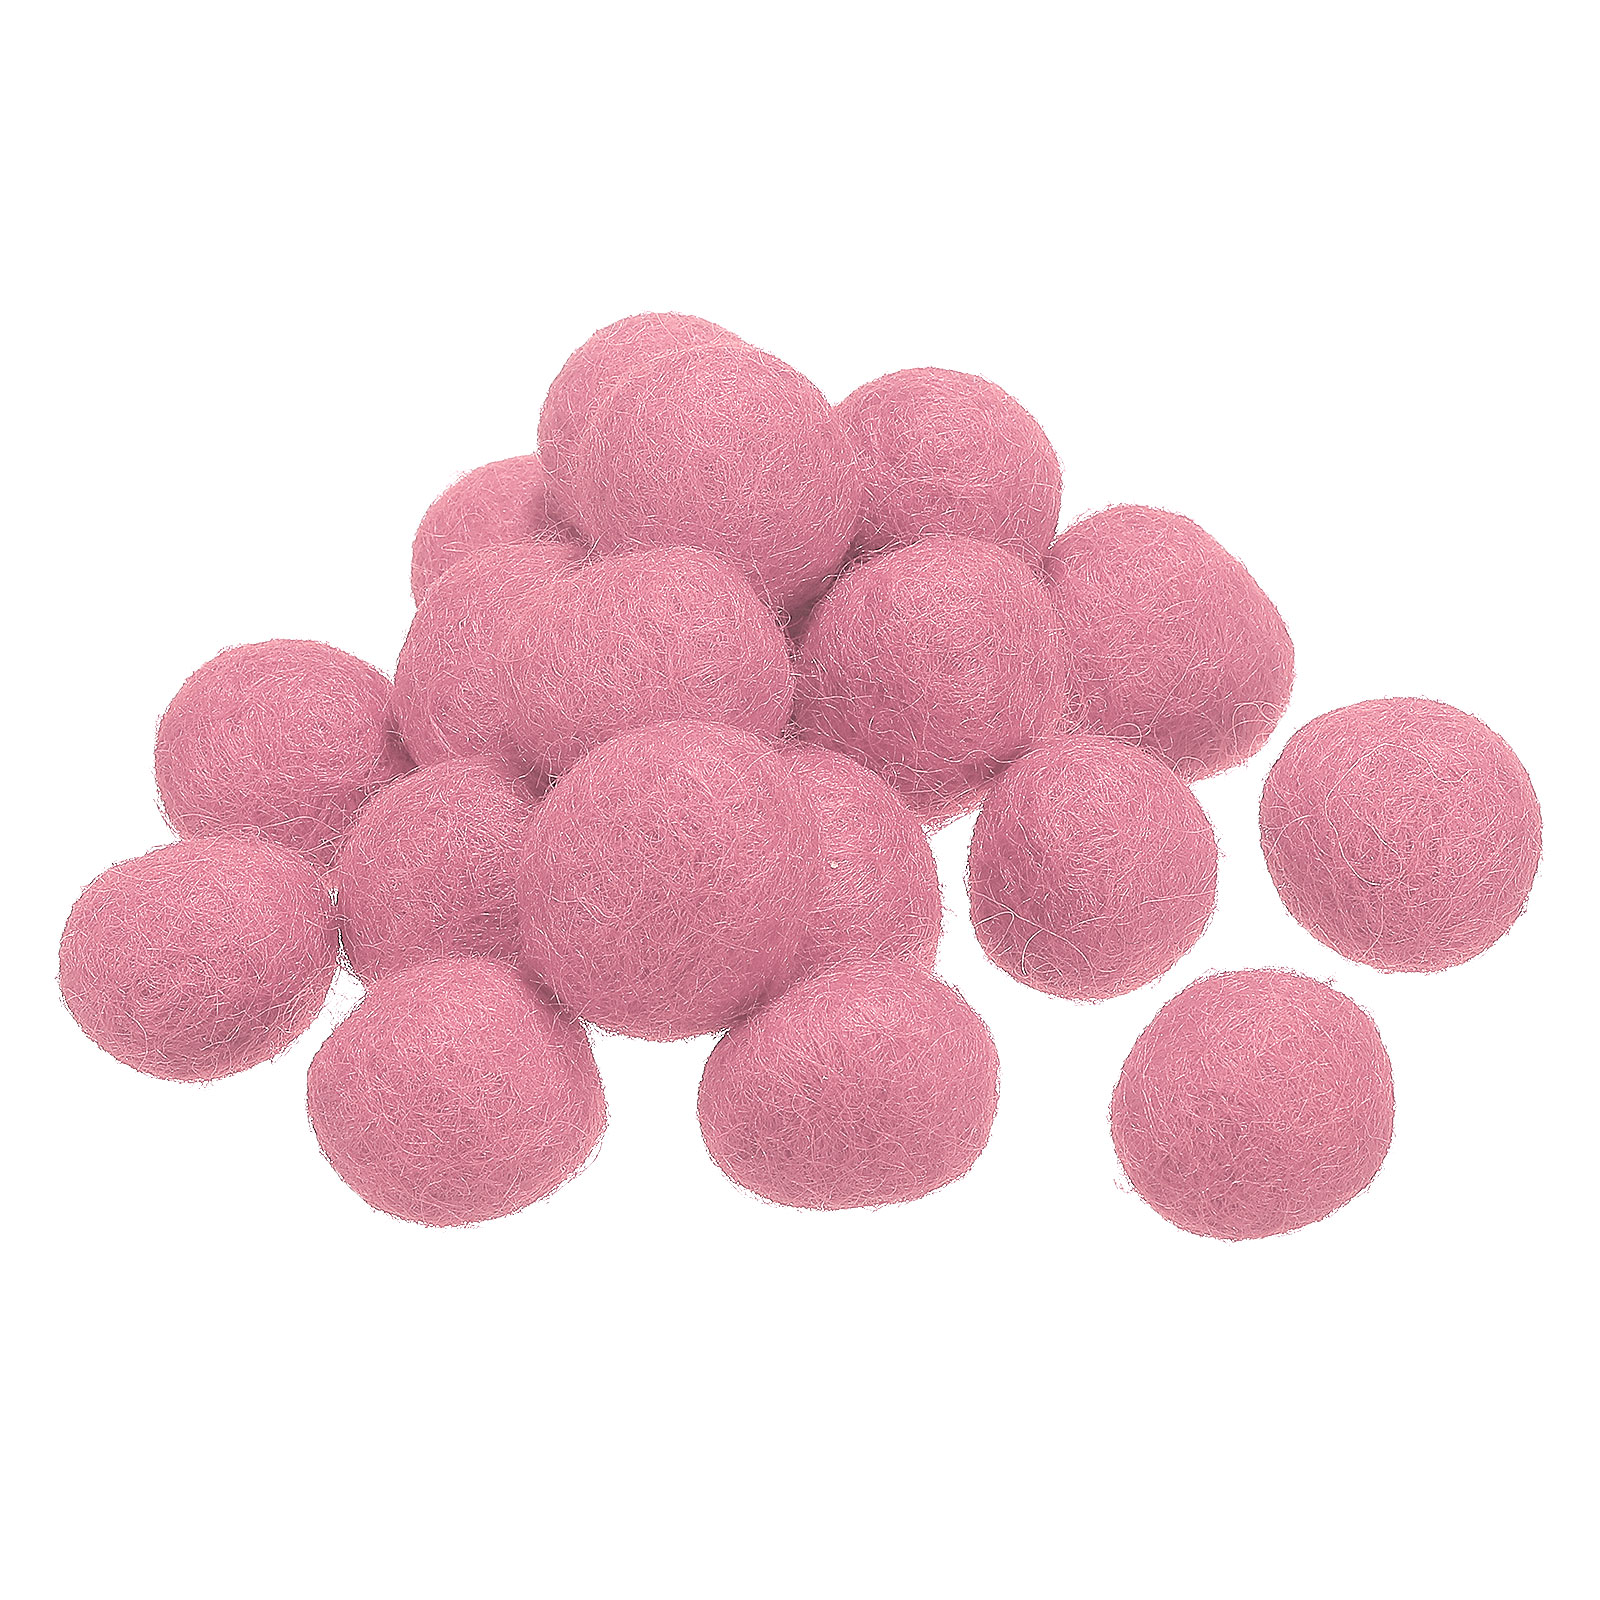 Wool Felt Balls Beads Woolen Fabric 2cm 20mm Pink for Home Crafts 50Pcs 